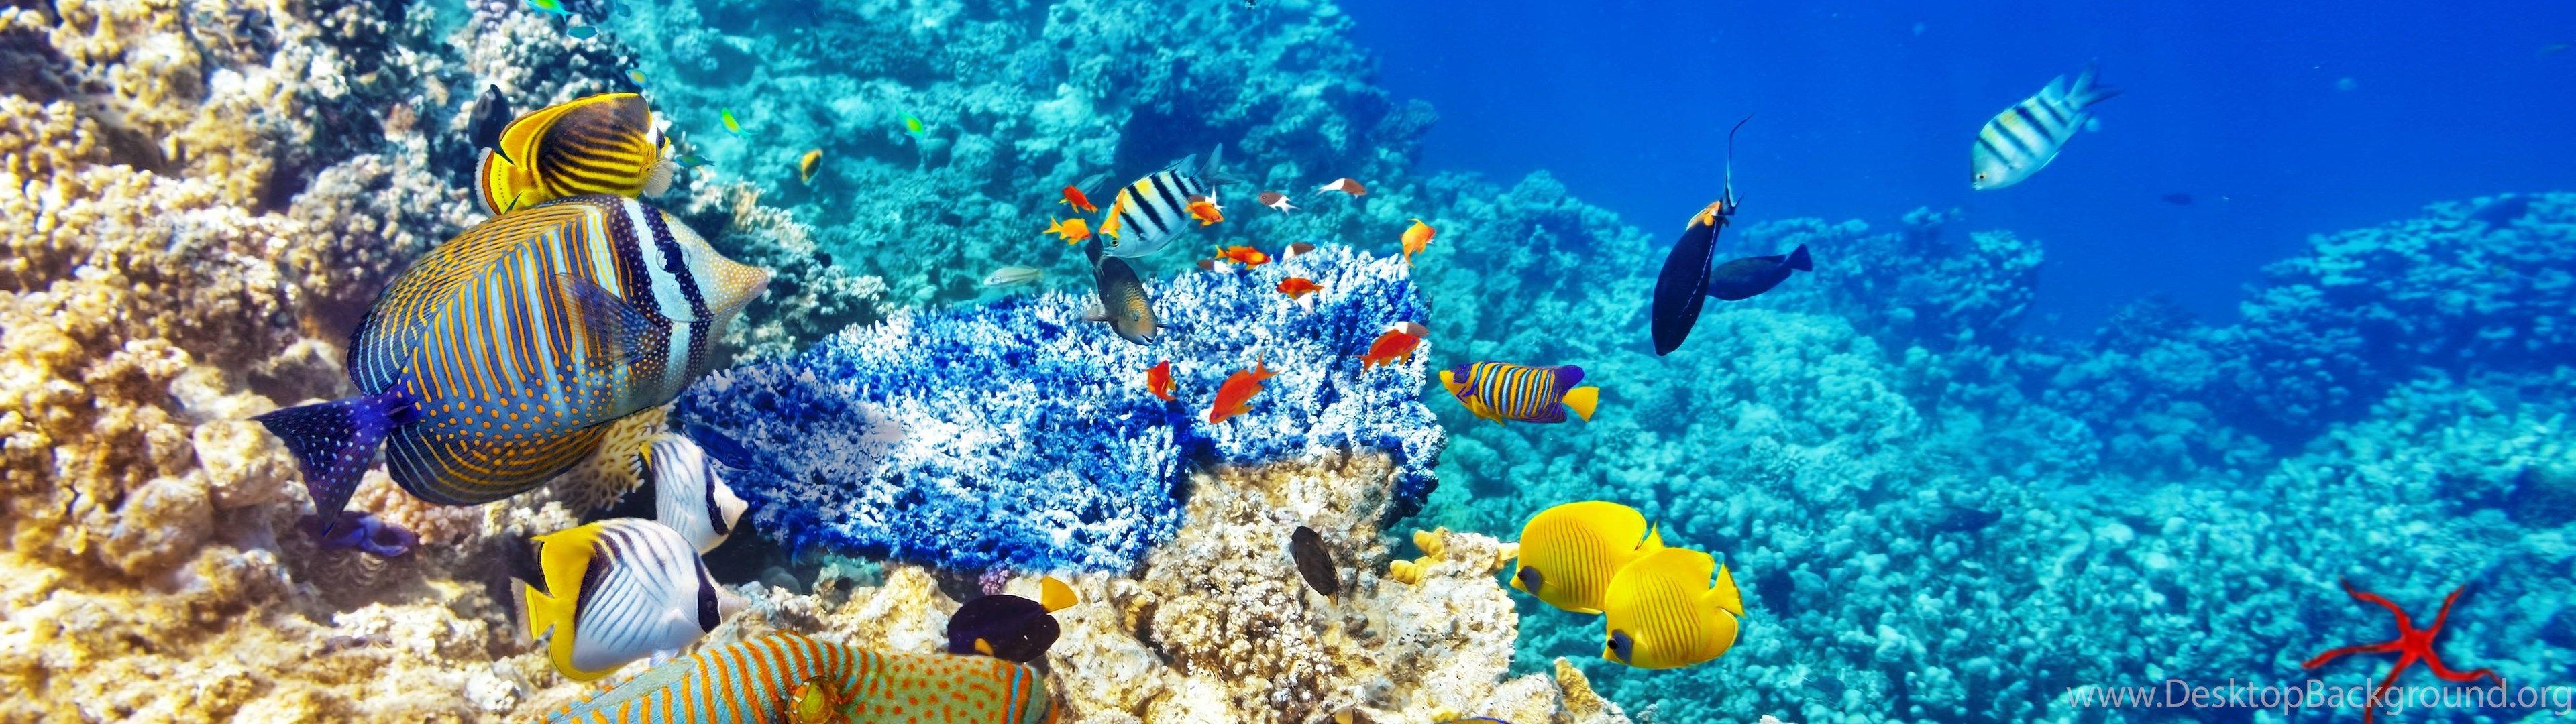 Ocean Underwater Coral Reef Wallpaper